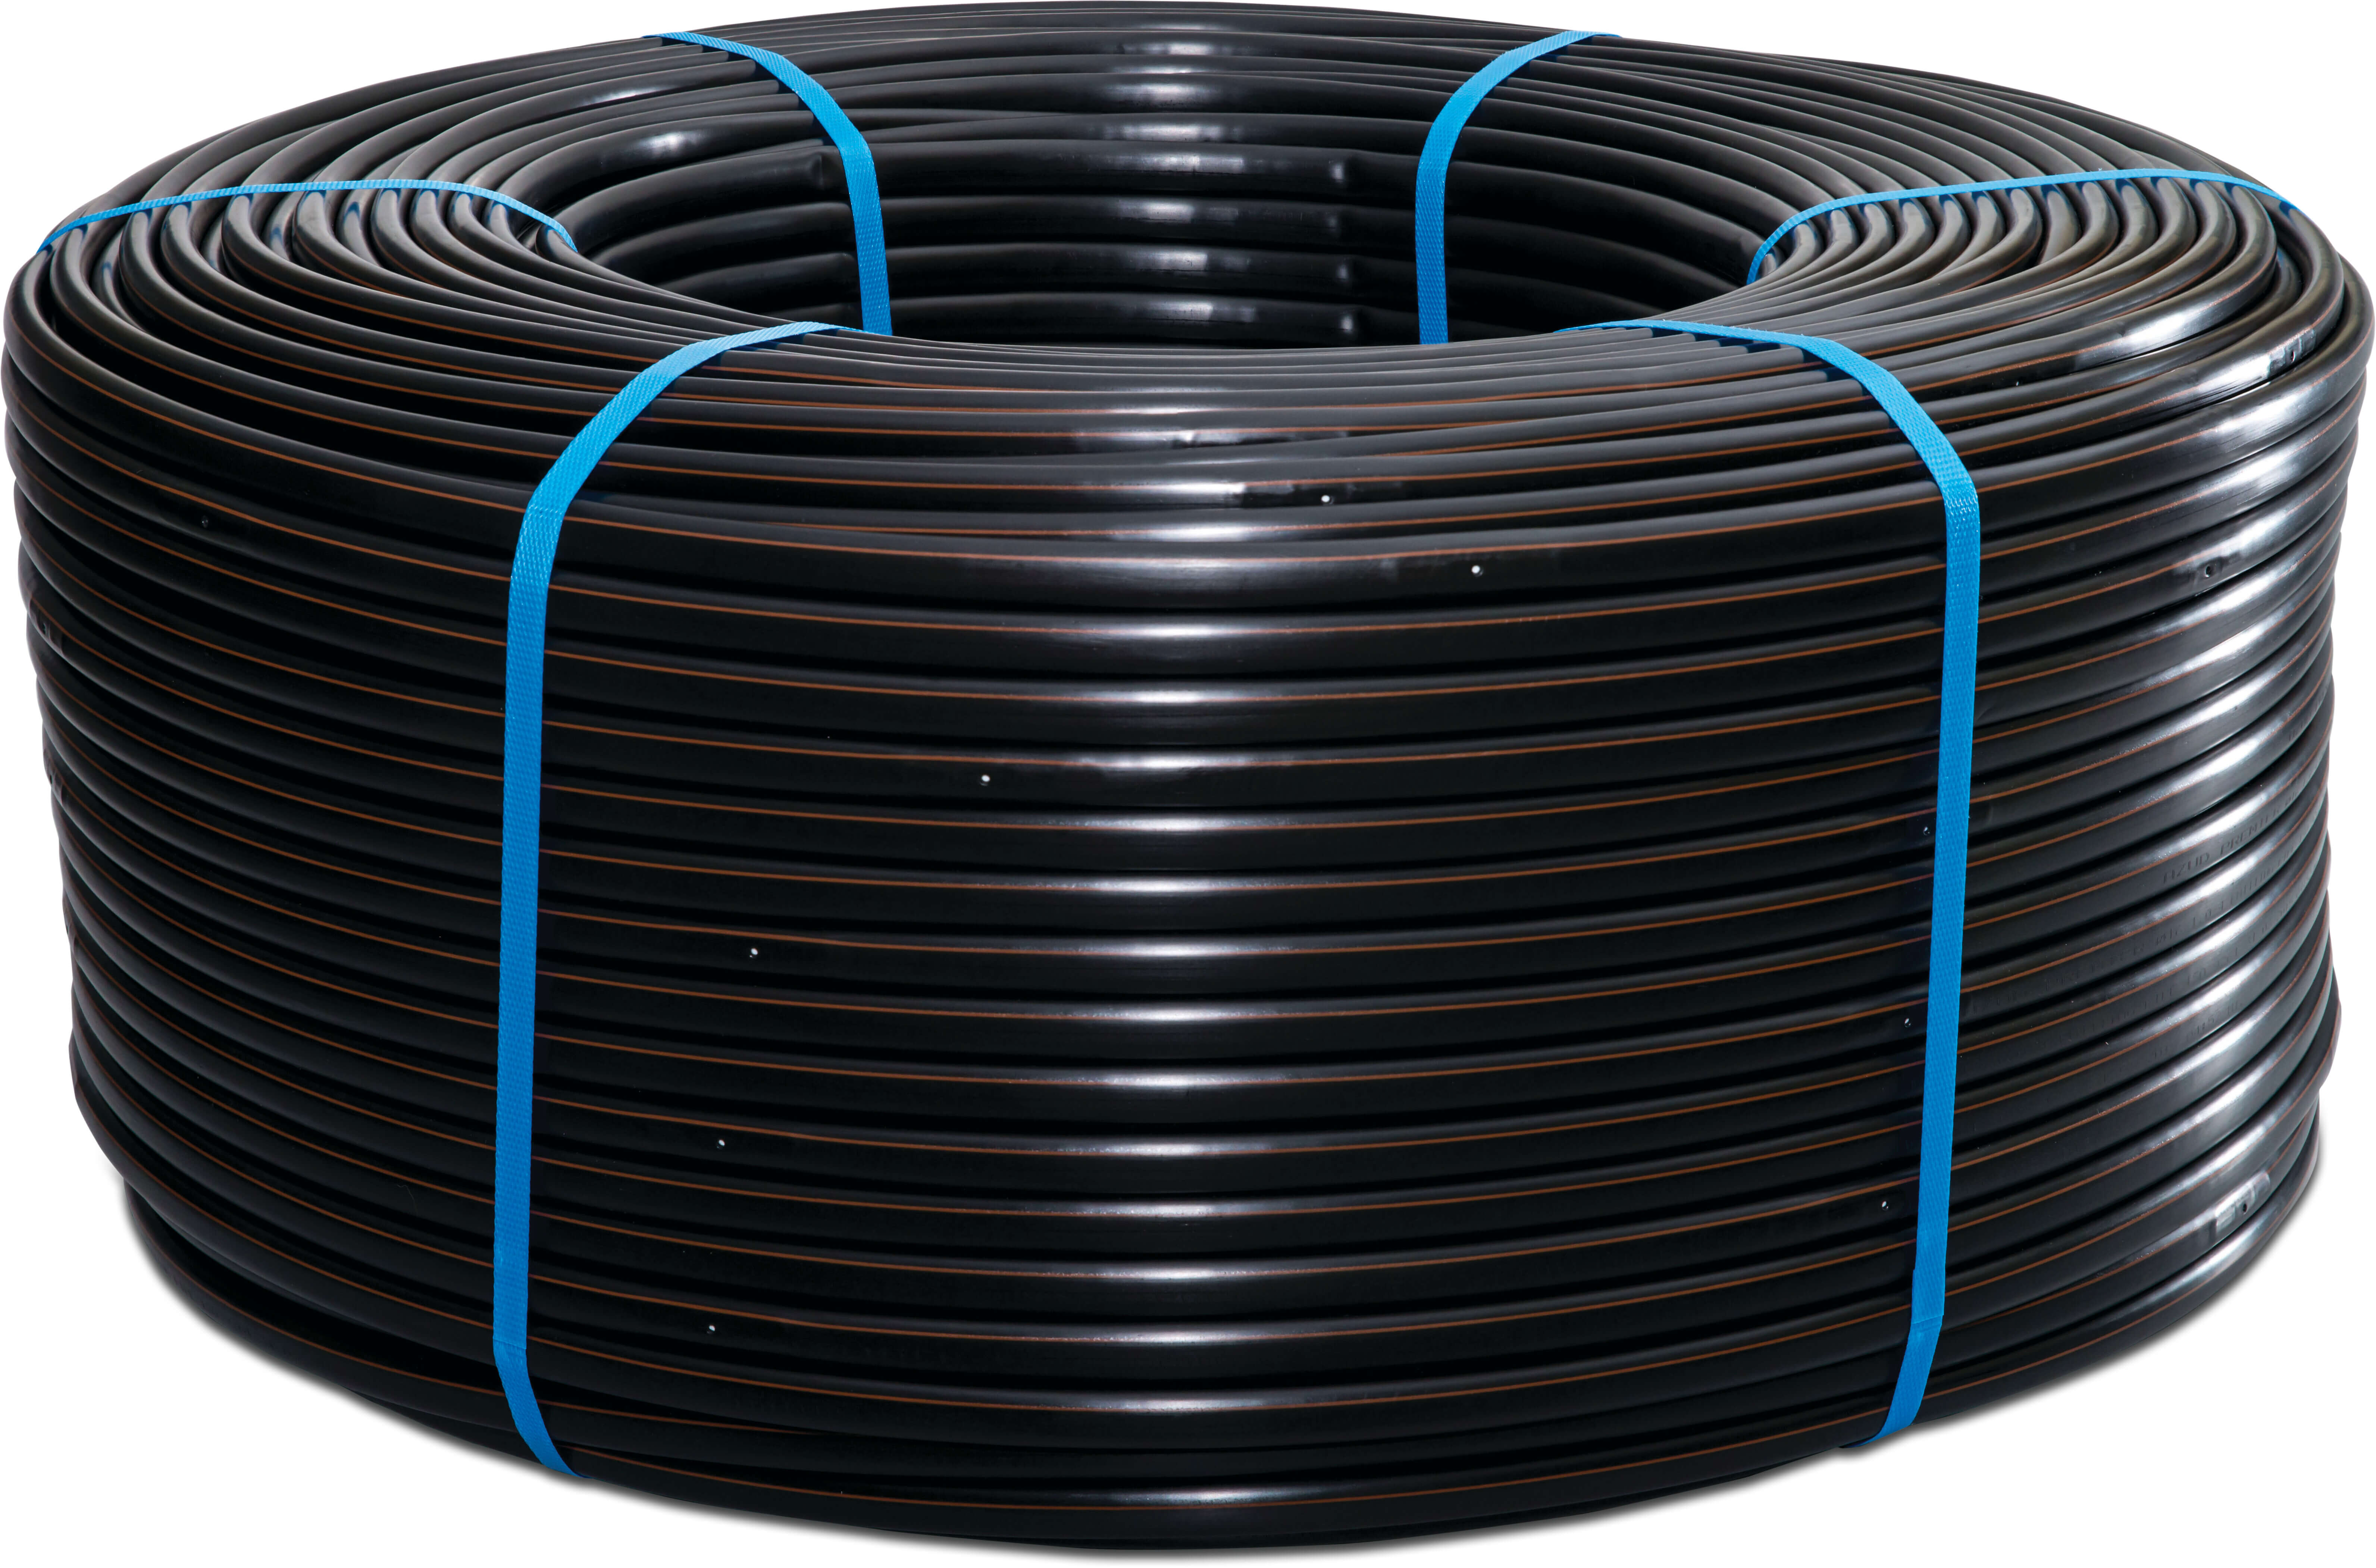 Azud Drip irrigation hose PE 16 mm x 1,0 mm 1,6ltr/h 20cm black 500m type Premier PC AS